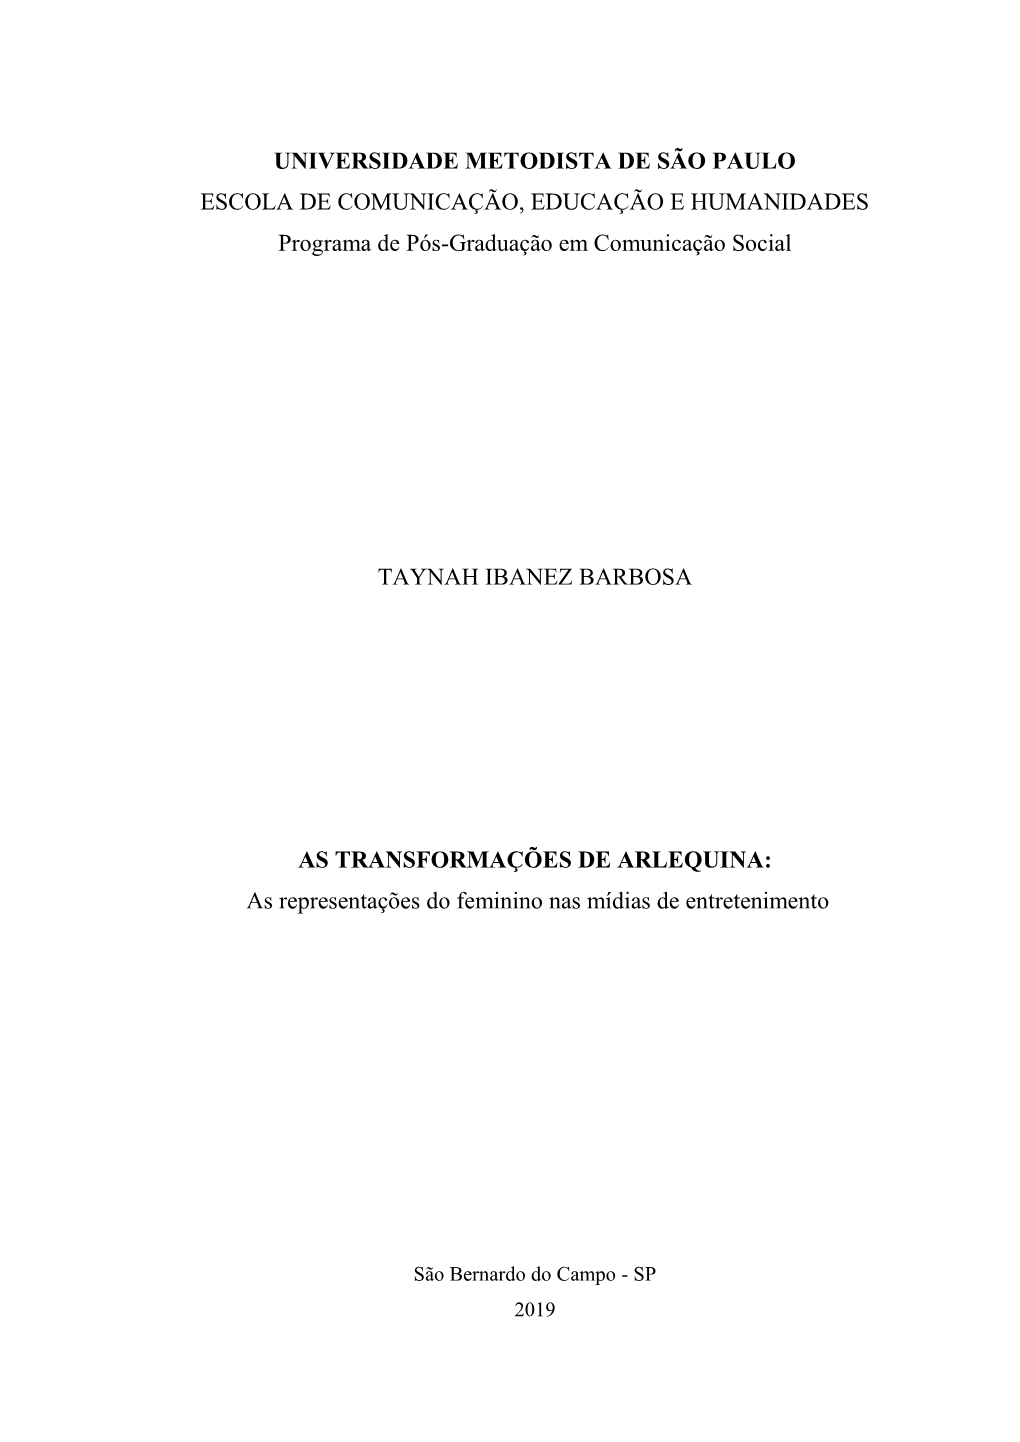 UNIVERSIDADE METODISTA DE SÃO PAULO ESCOLA DE COMUNICAÇÃO, EDUCAÇÃO E HUMANIDADES Programa De Pós-Graduação Em Comunicação Social